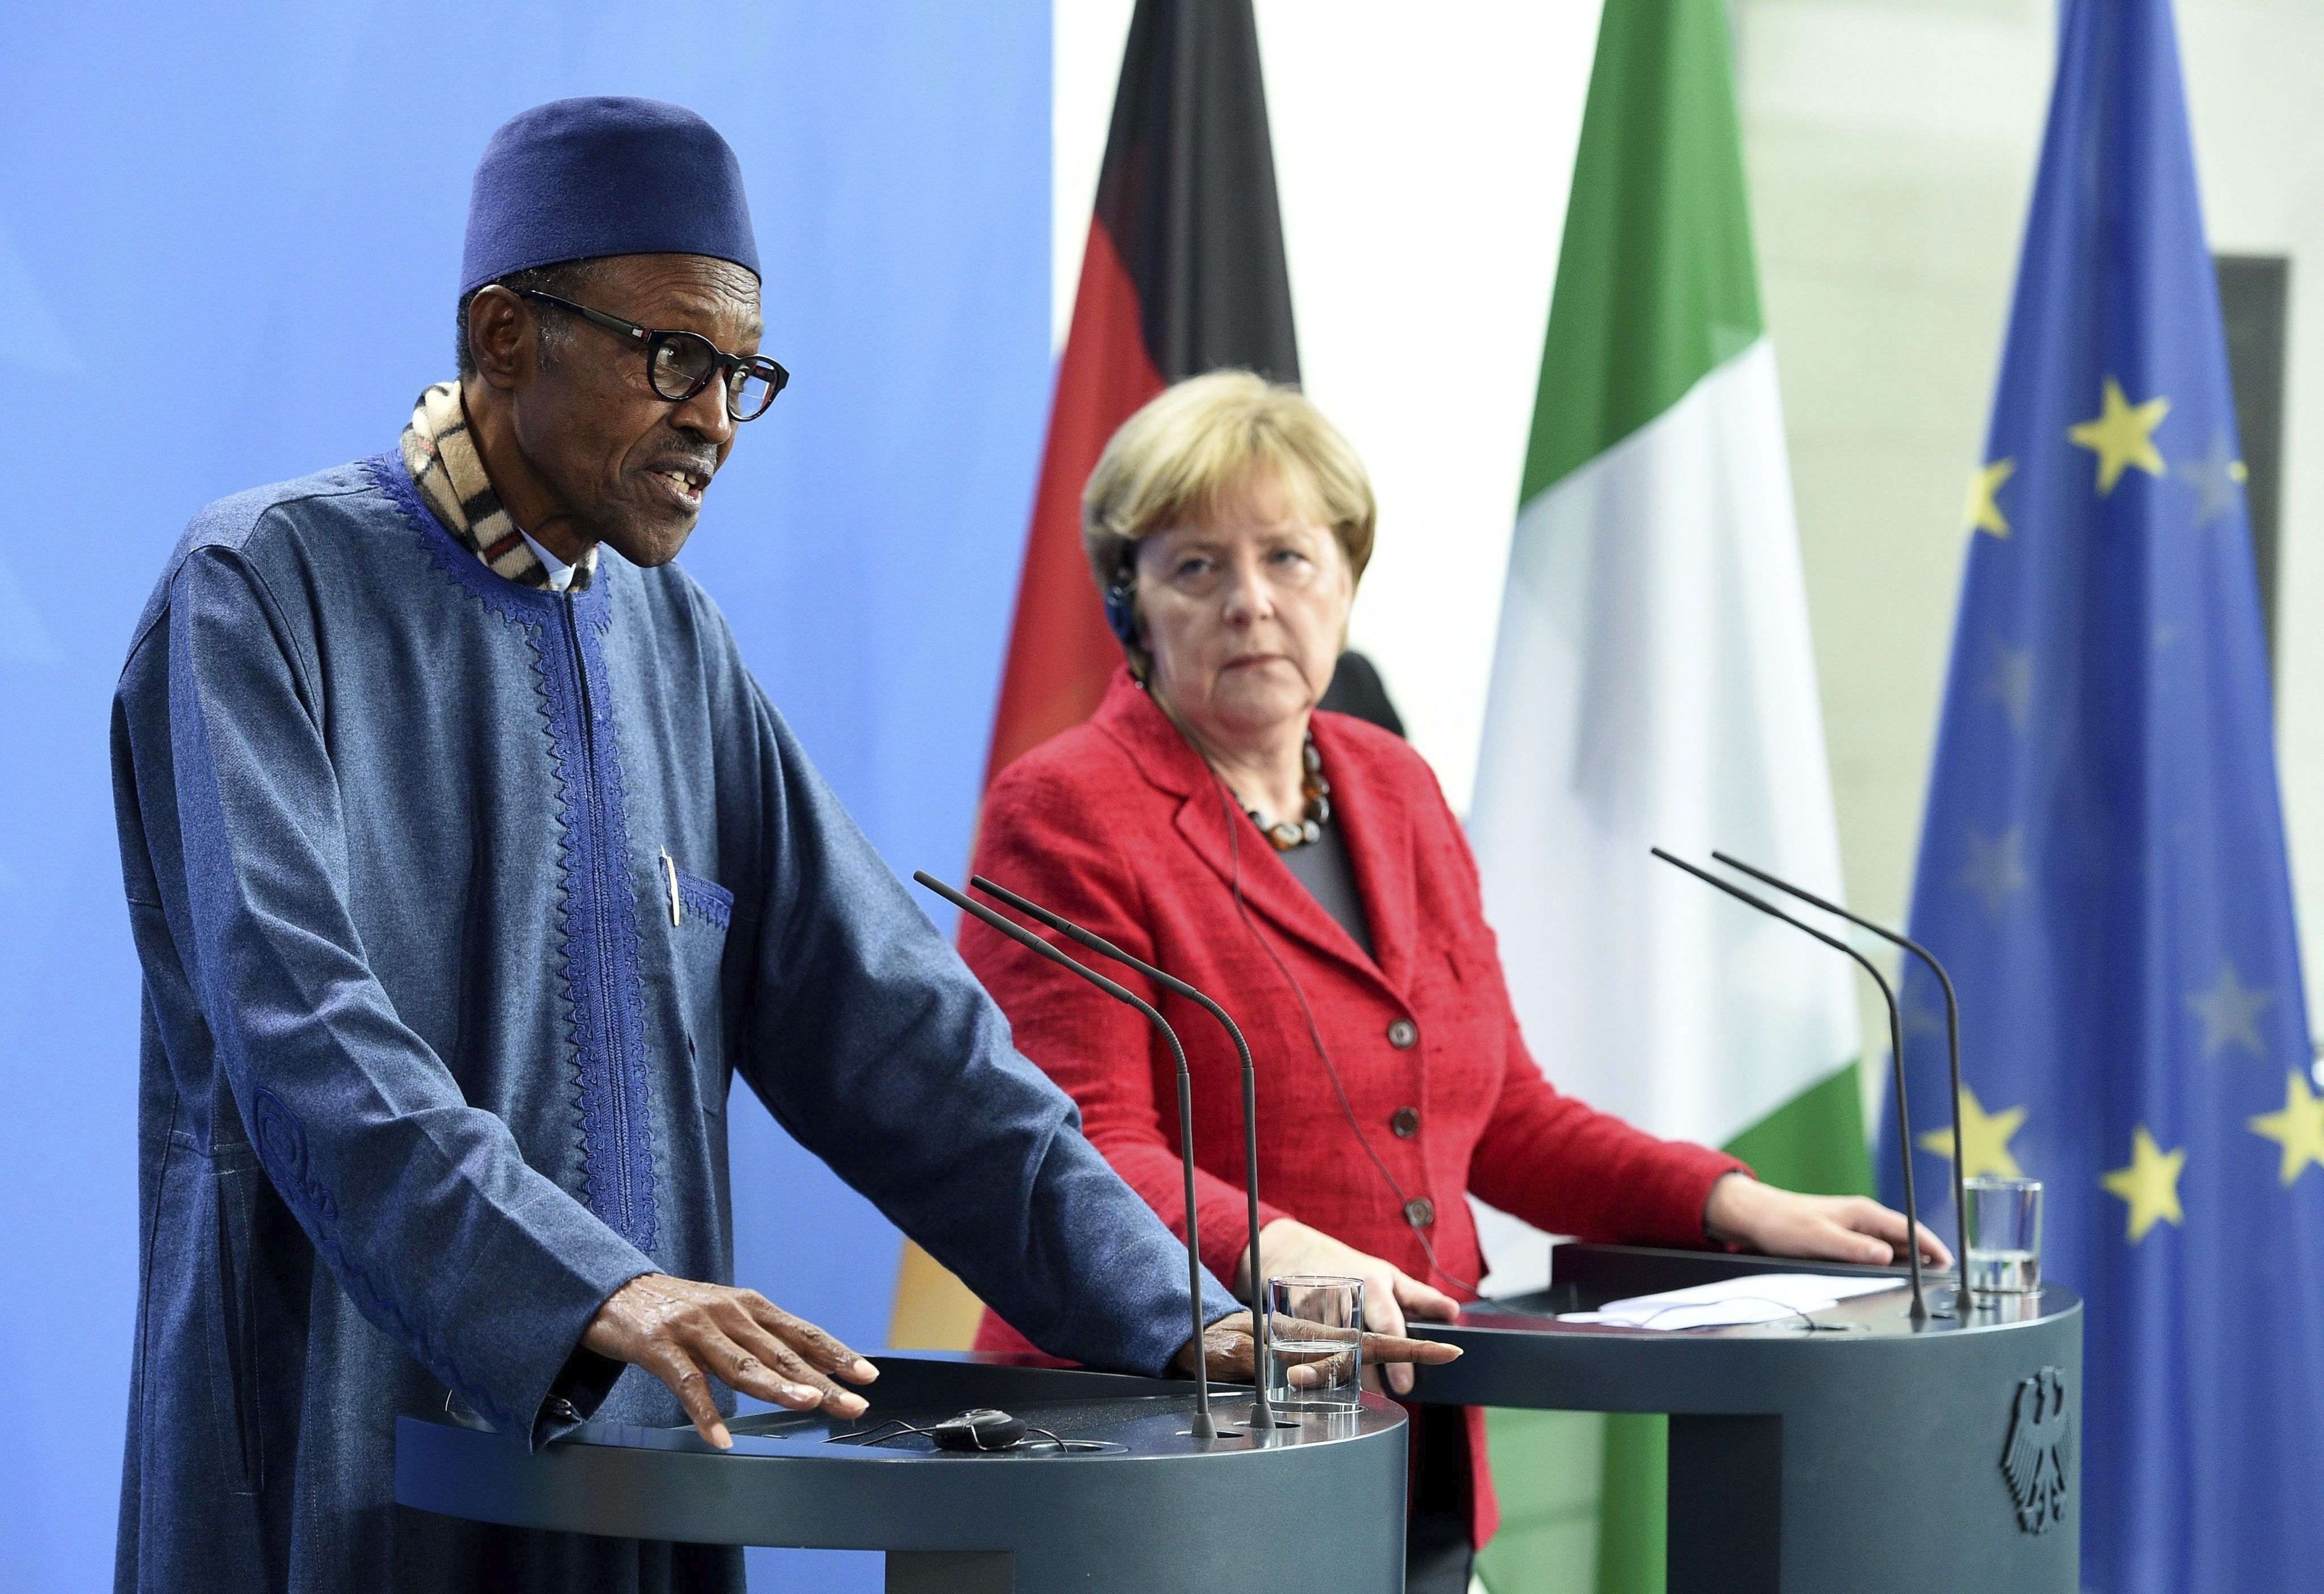 El president de Nigèria diu davant de Merkel que el lloc de la seva dona "és a la cuina"